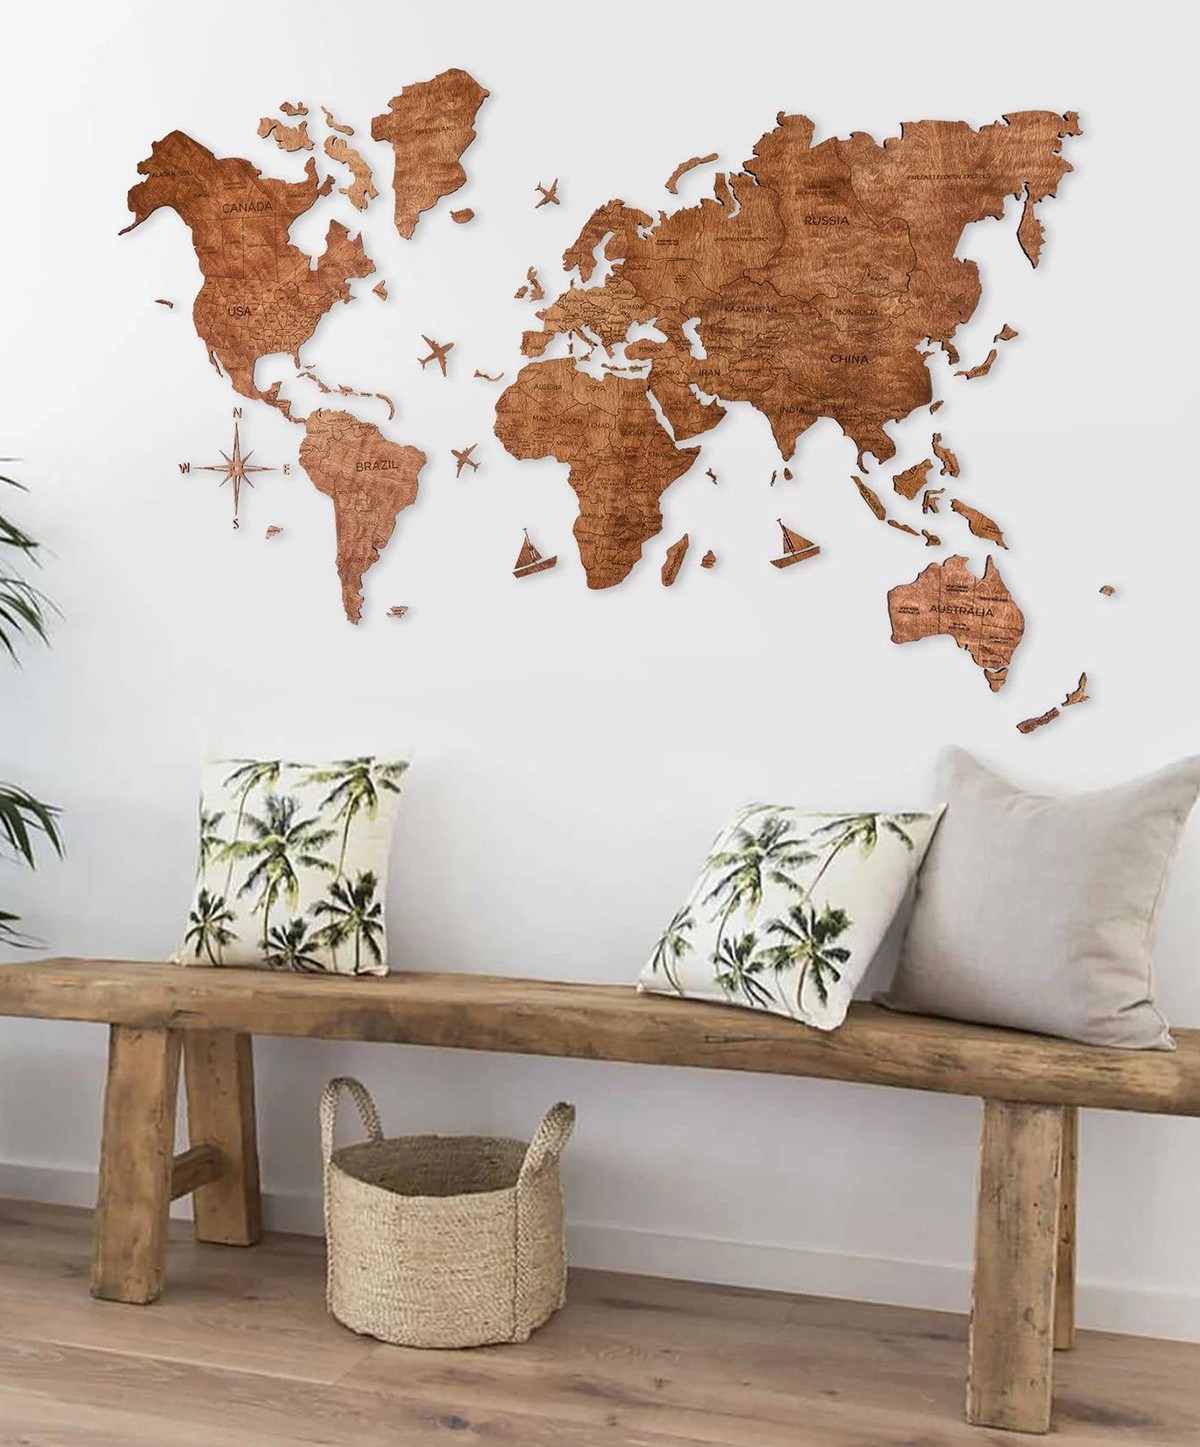 نقشه جهان چوبی رنگ بلوط